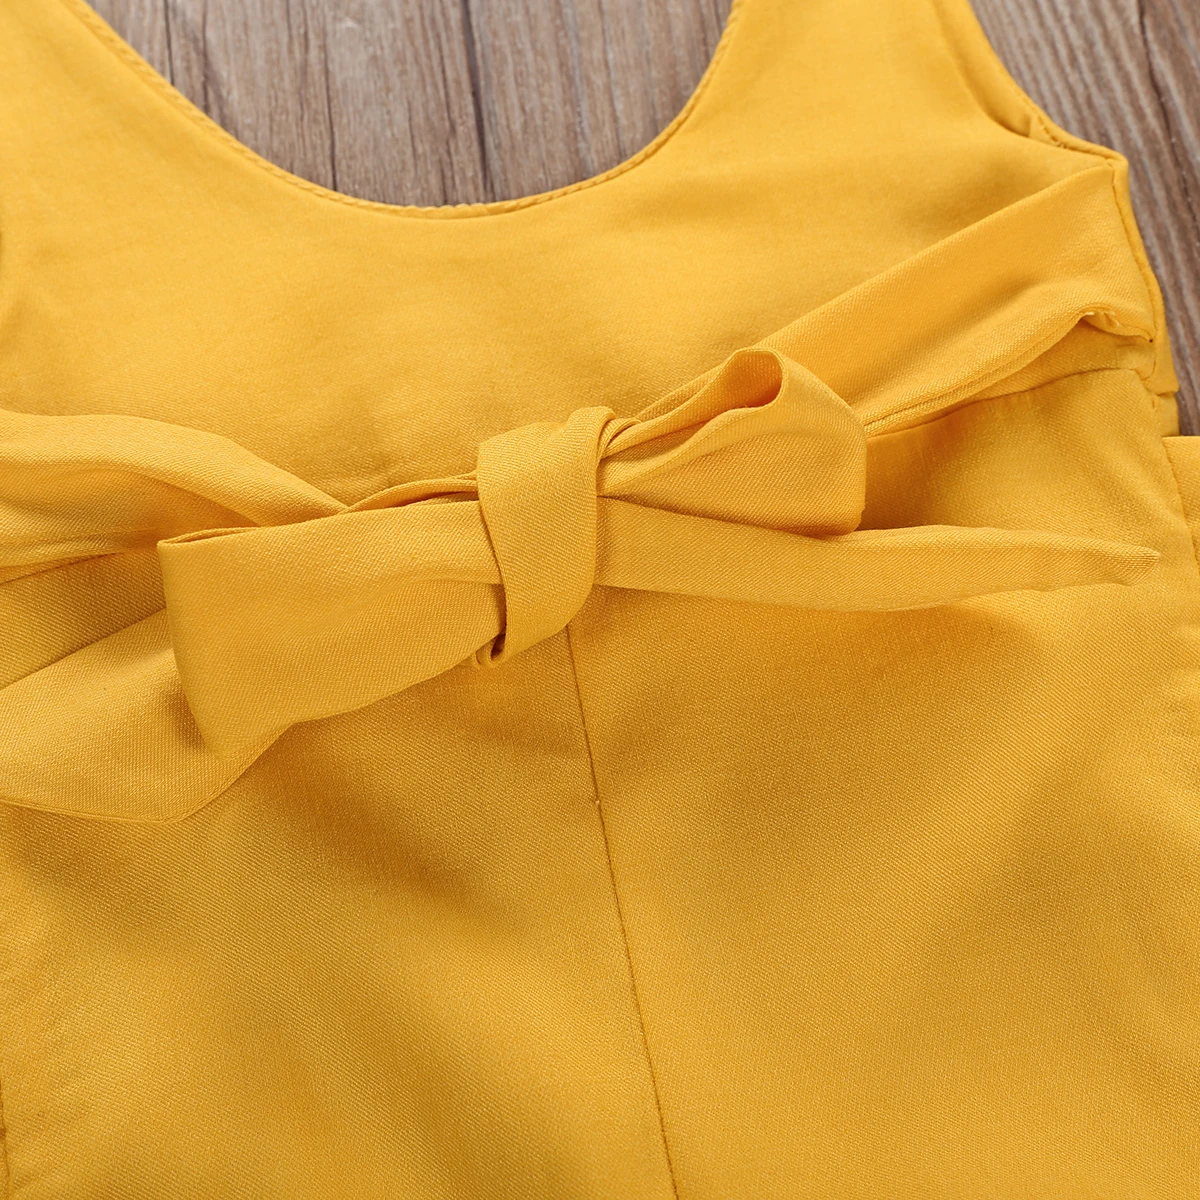 Модная повседневная одежда для маленьких девочек желтый комбинезон брюки комбидресс комбинезон